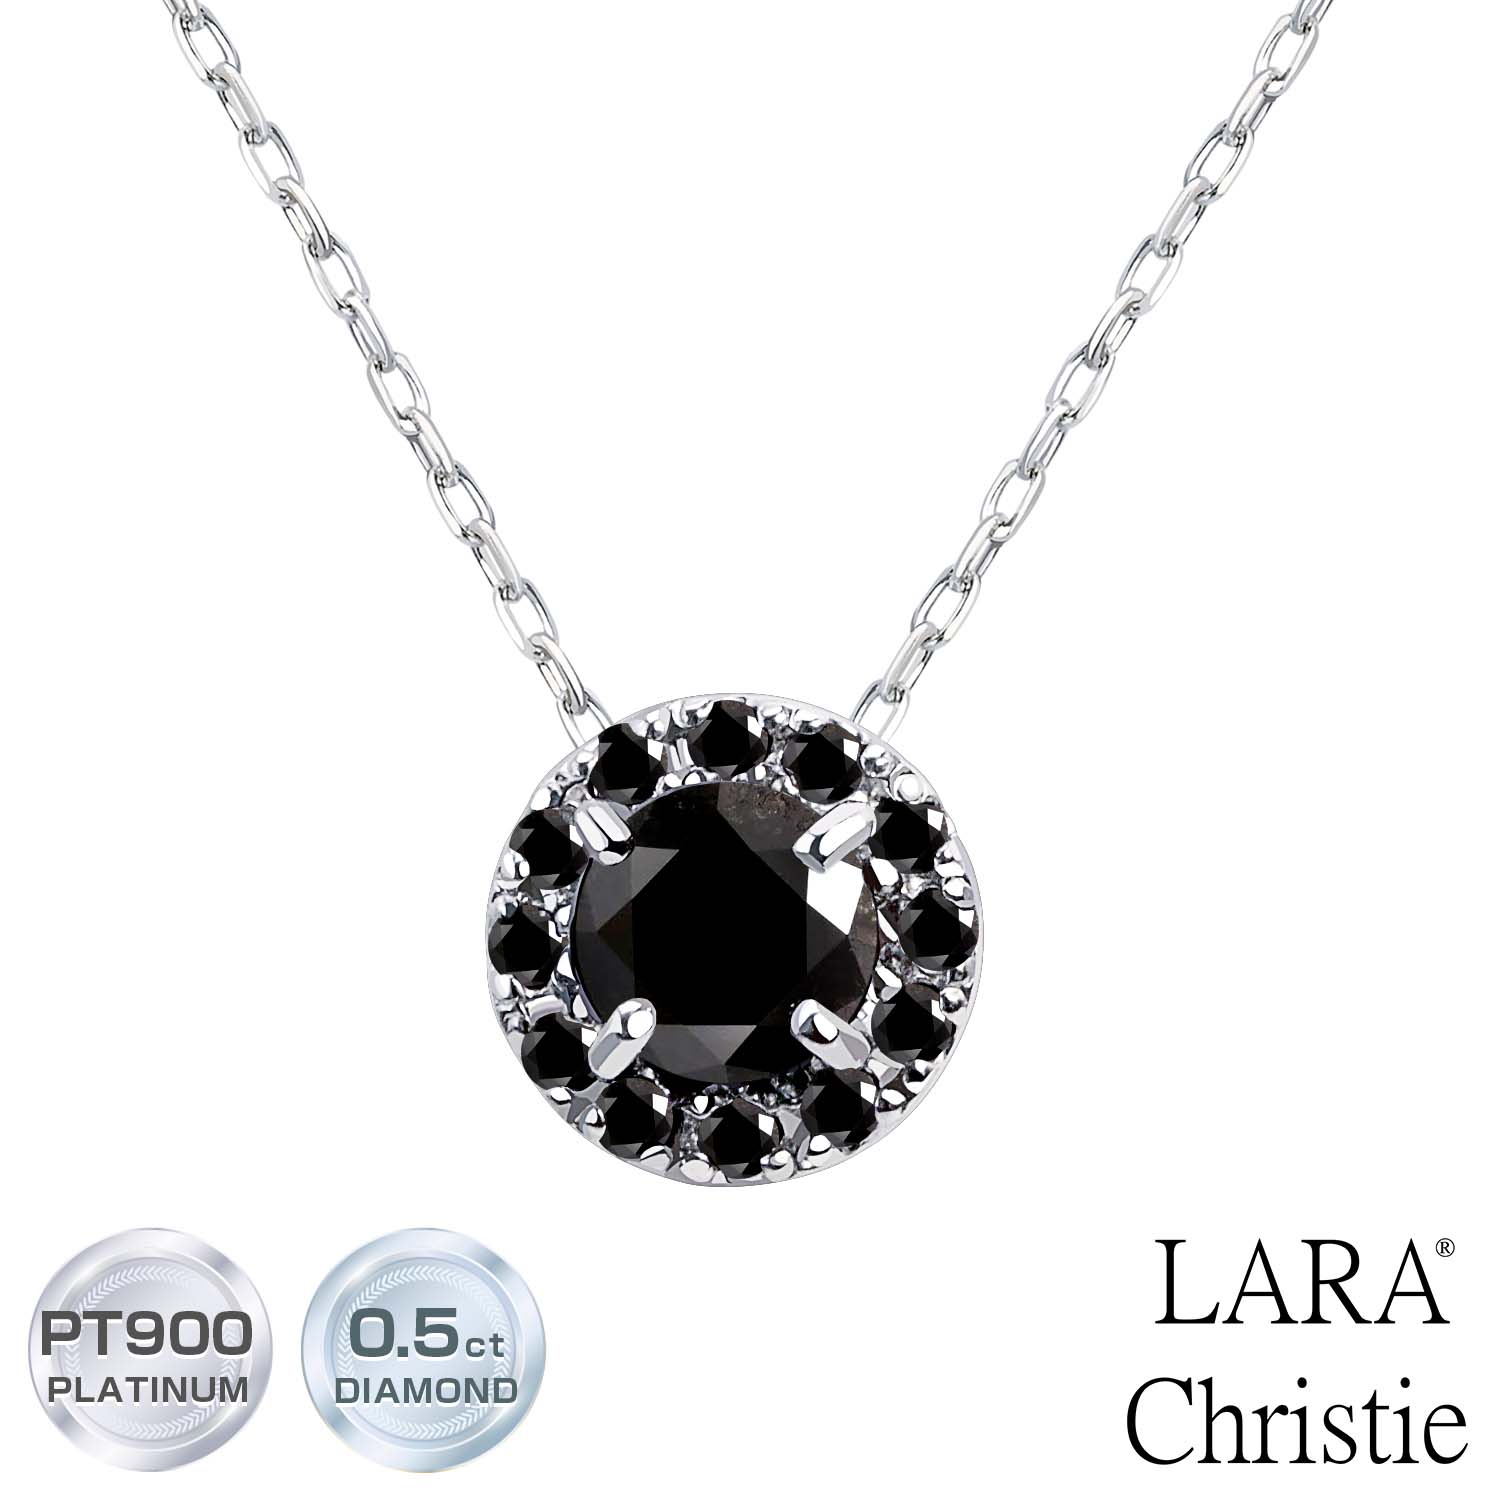 ララクリスティー ネックレス レディース プラチナ ブラックダイヤモンド 計0.5ct サークルネックレス LARA Christie ララクリスティー lp56-0008 女性 誕生日プレゼント